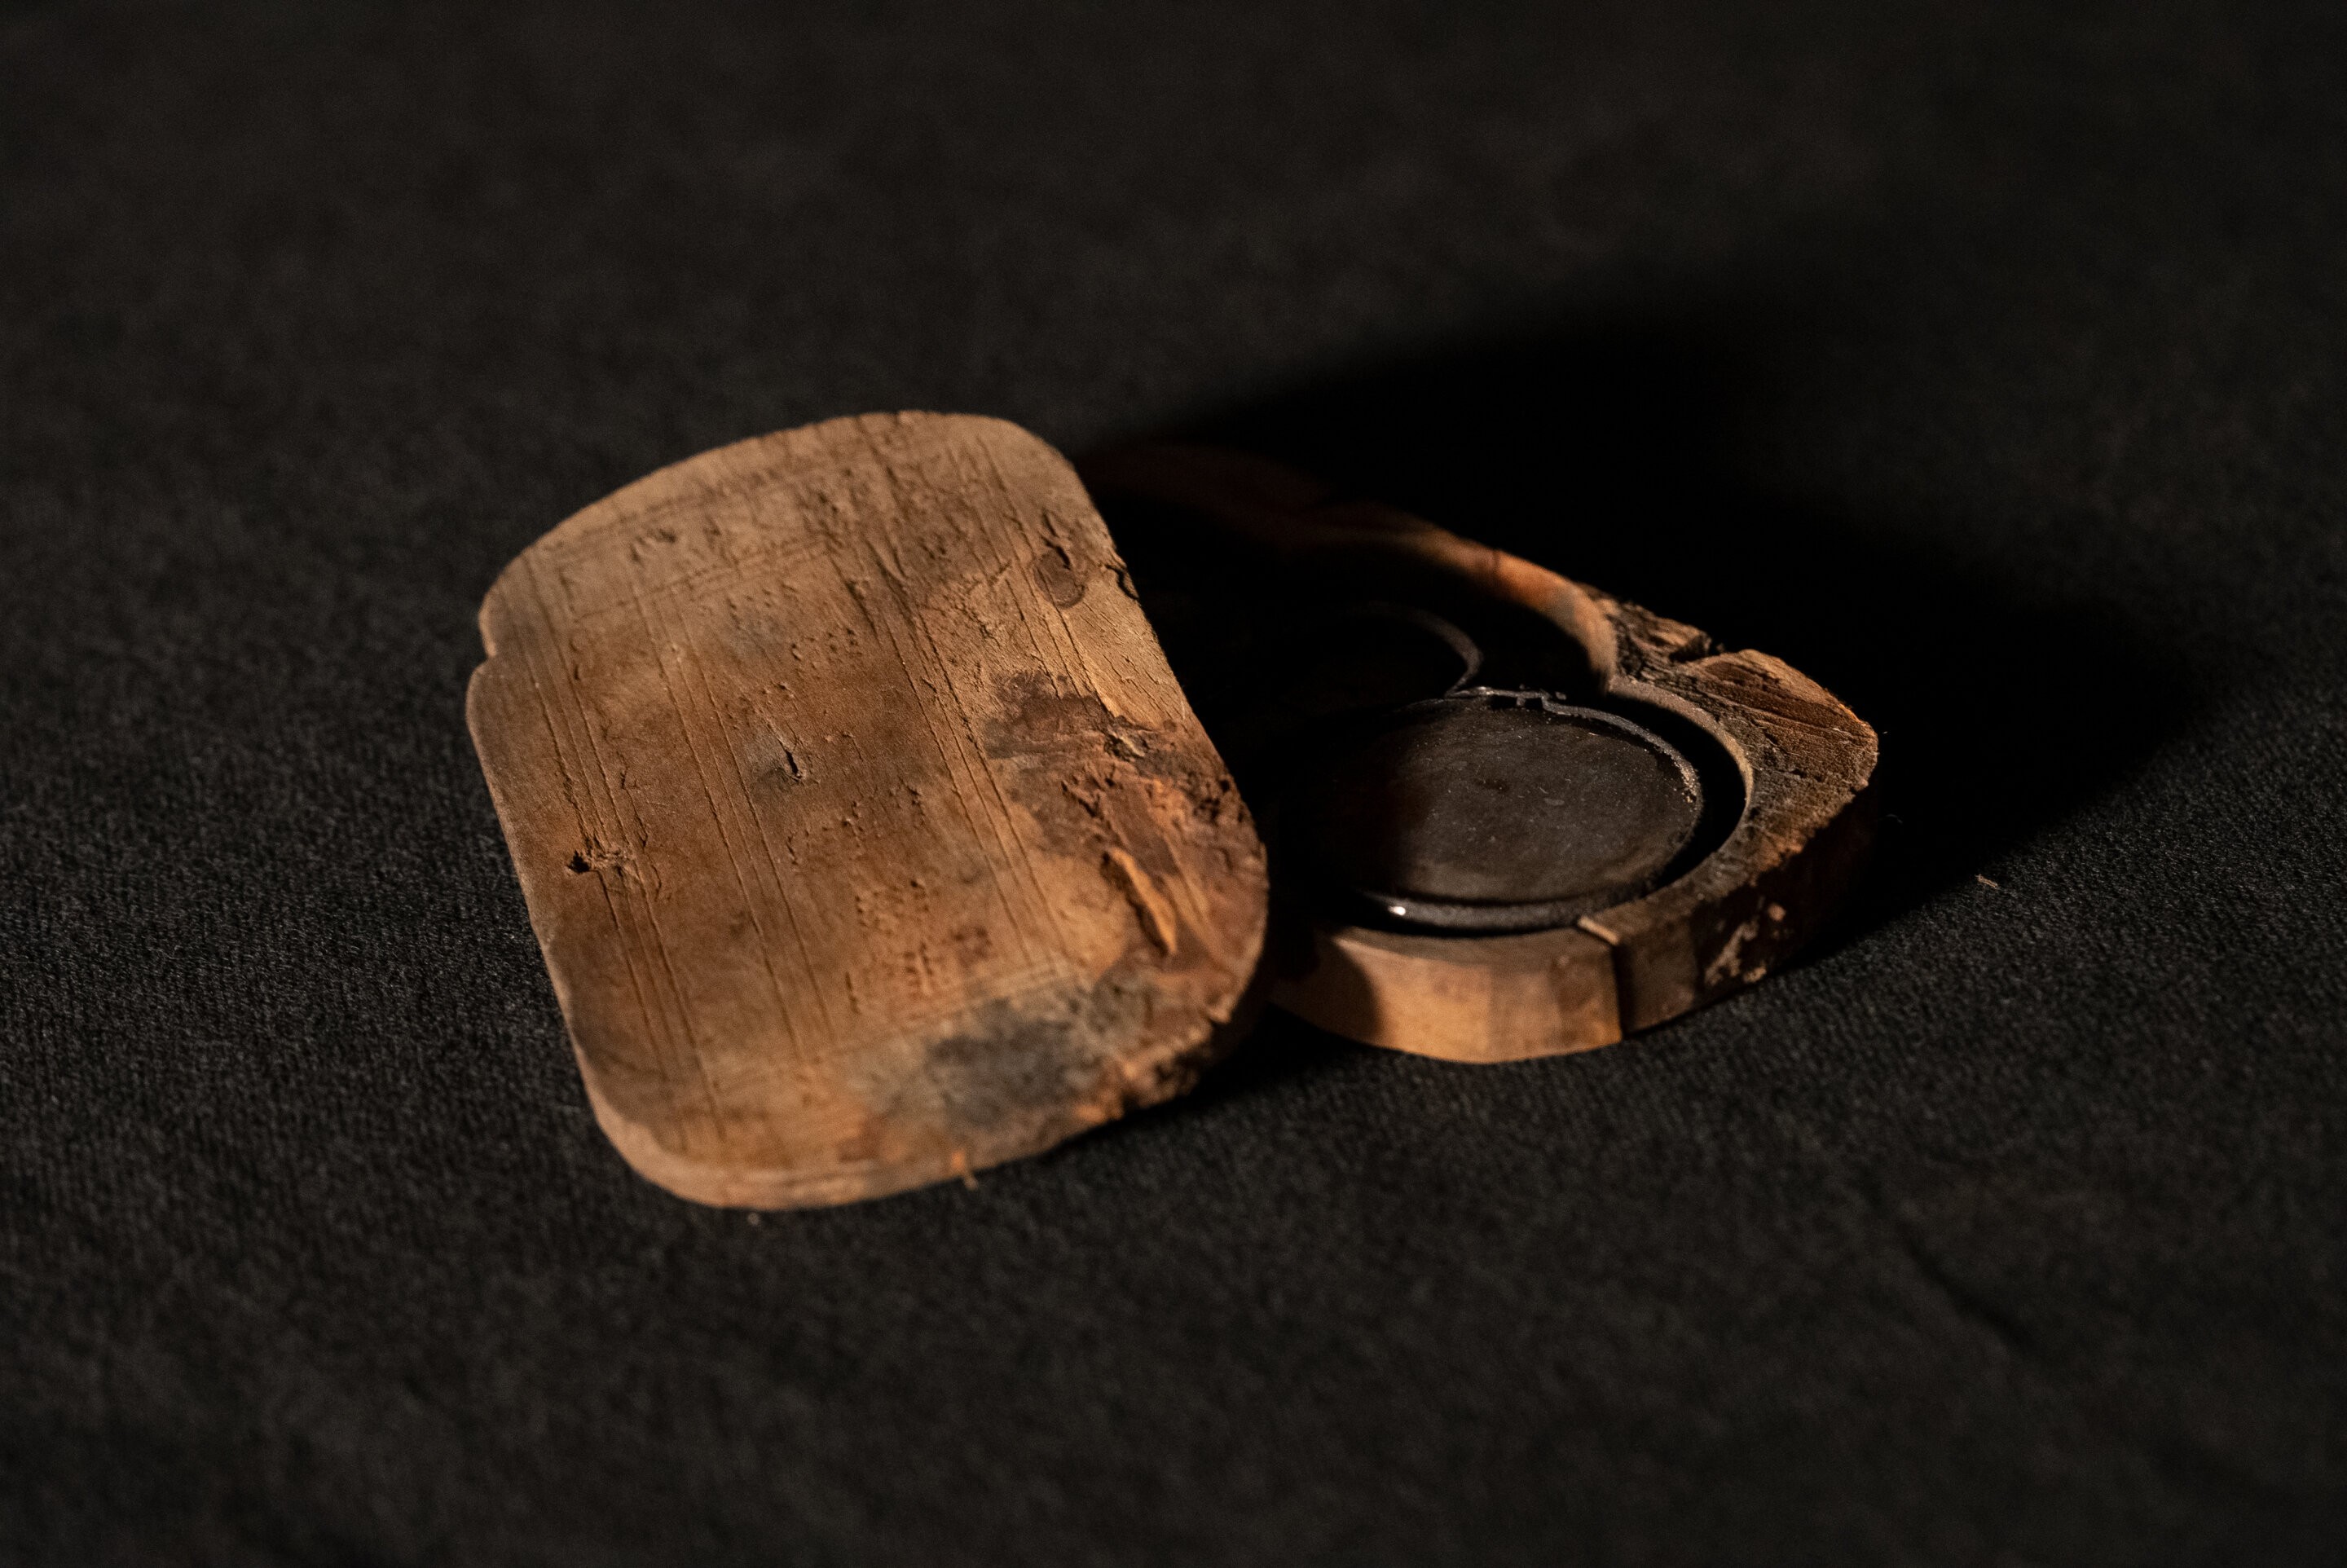 Par de óculos encontrado no naufrágio do navio do século 17 (Foto: University of East Anglia)